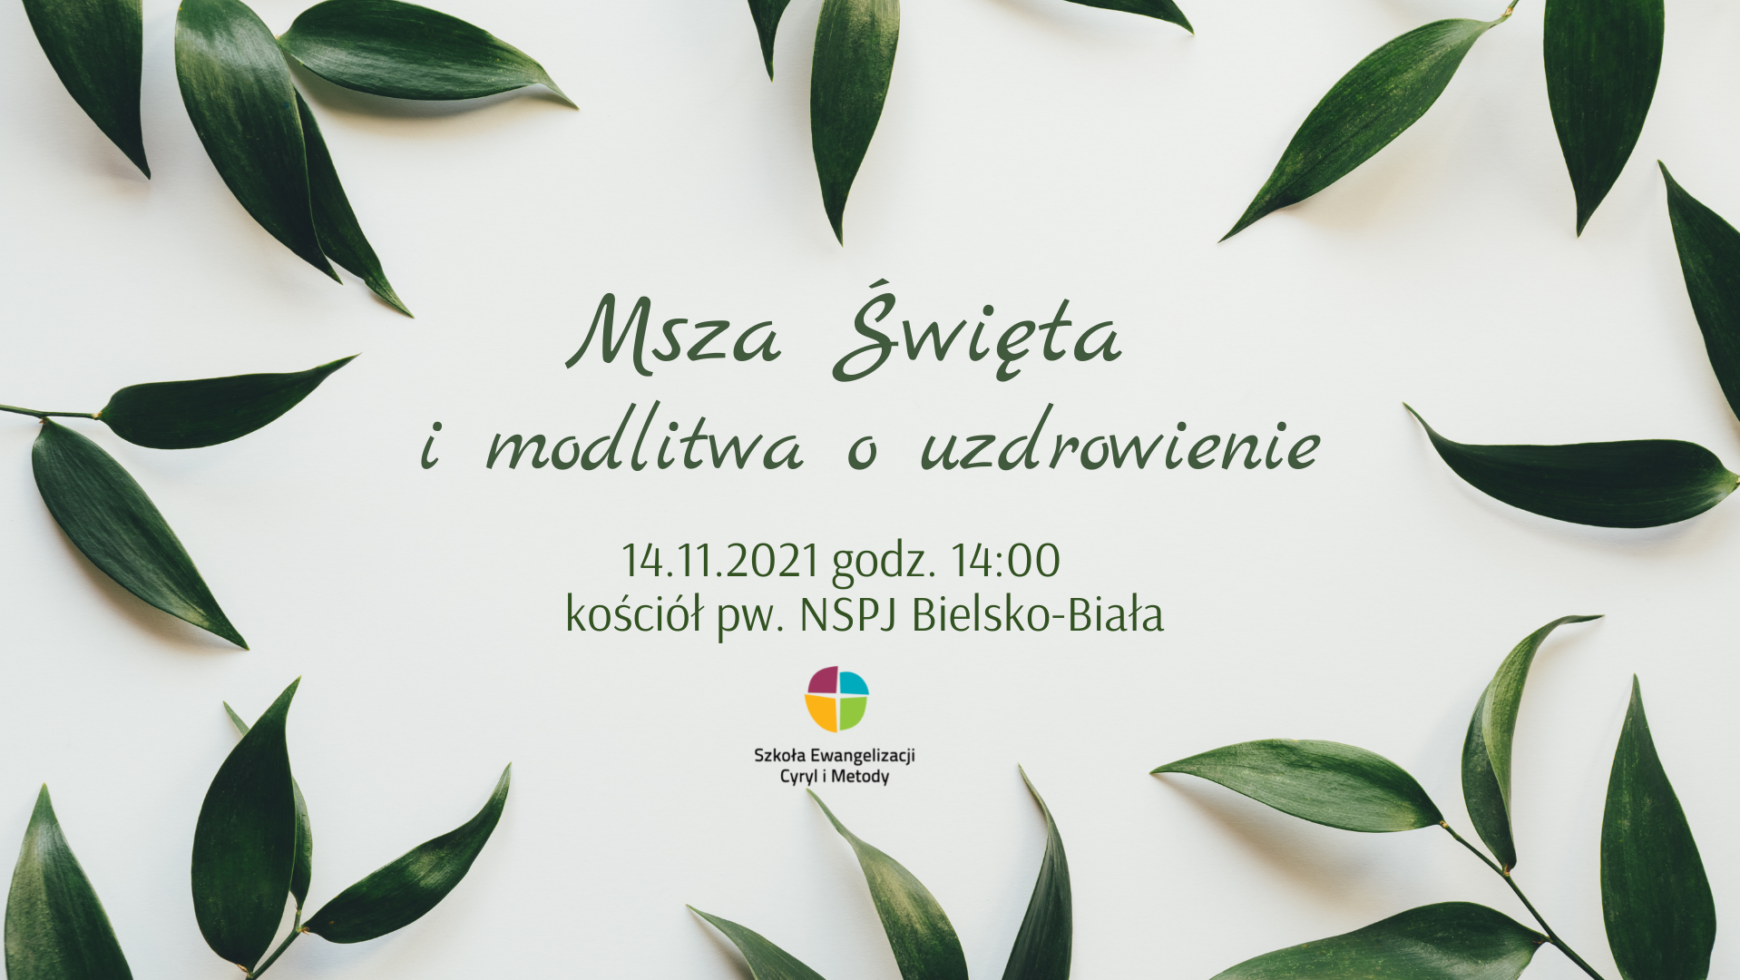 Msza Święta i modlitwa o uzdrowienie, Bielsko-Biała 14.11.2021